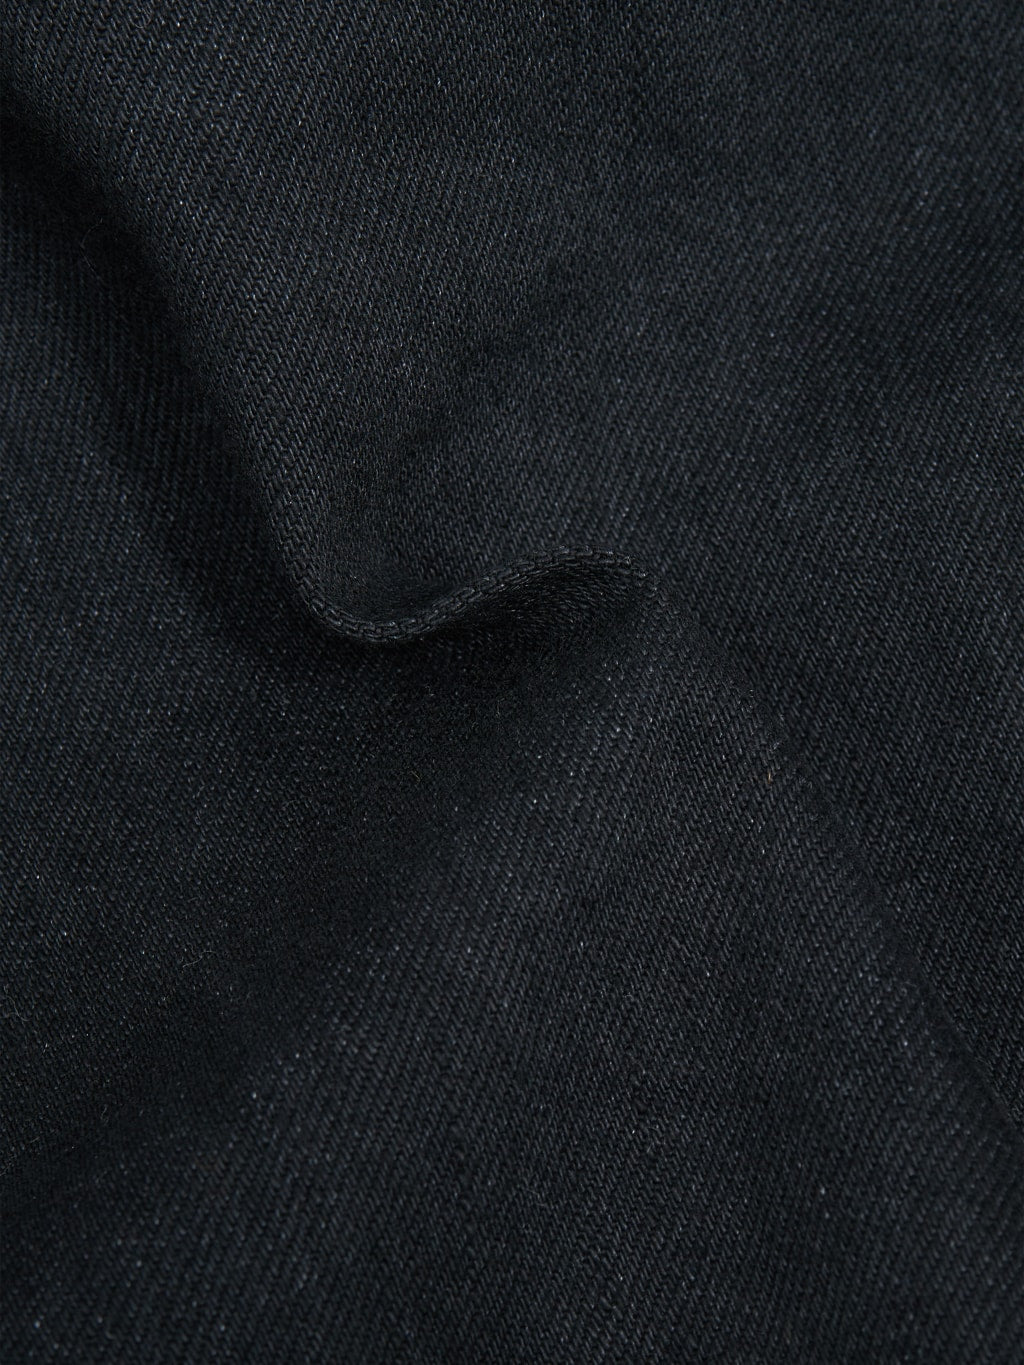 Momotaro MXGJ1108 Black x Black Type II Jacket  texture